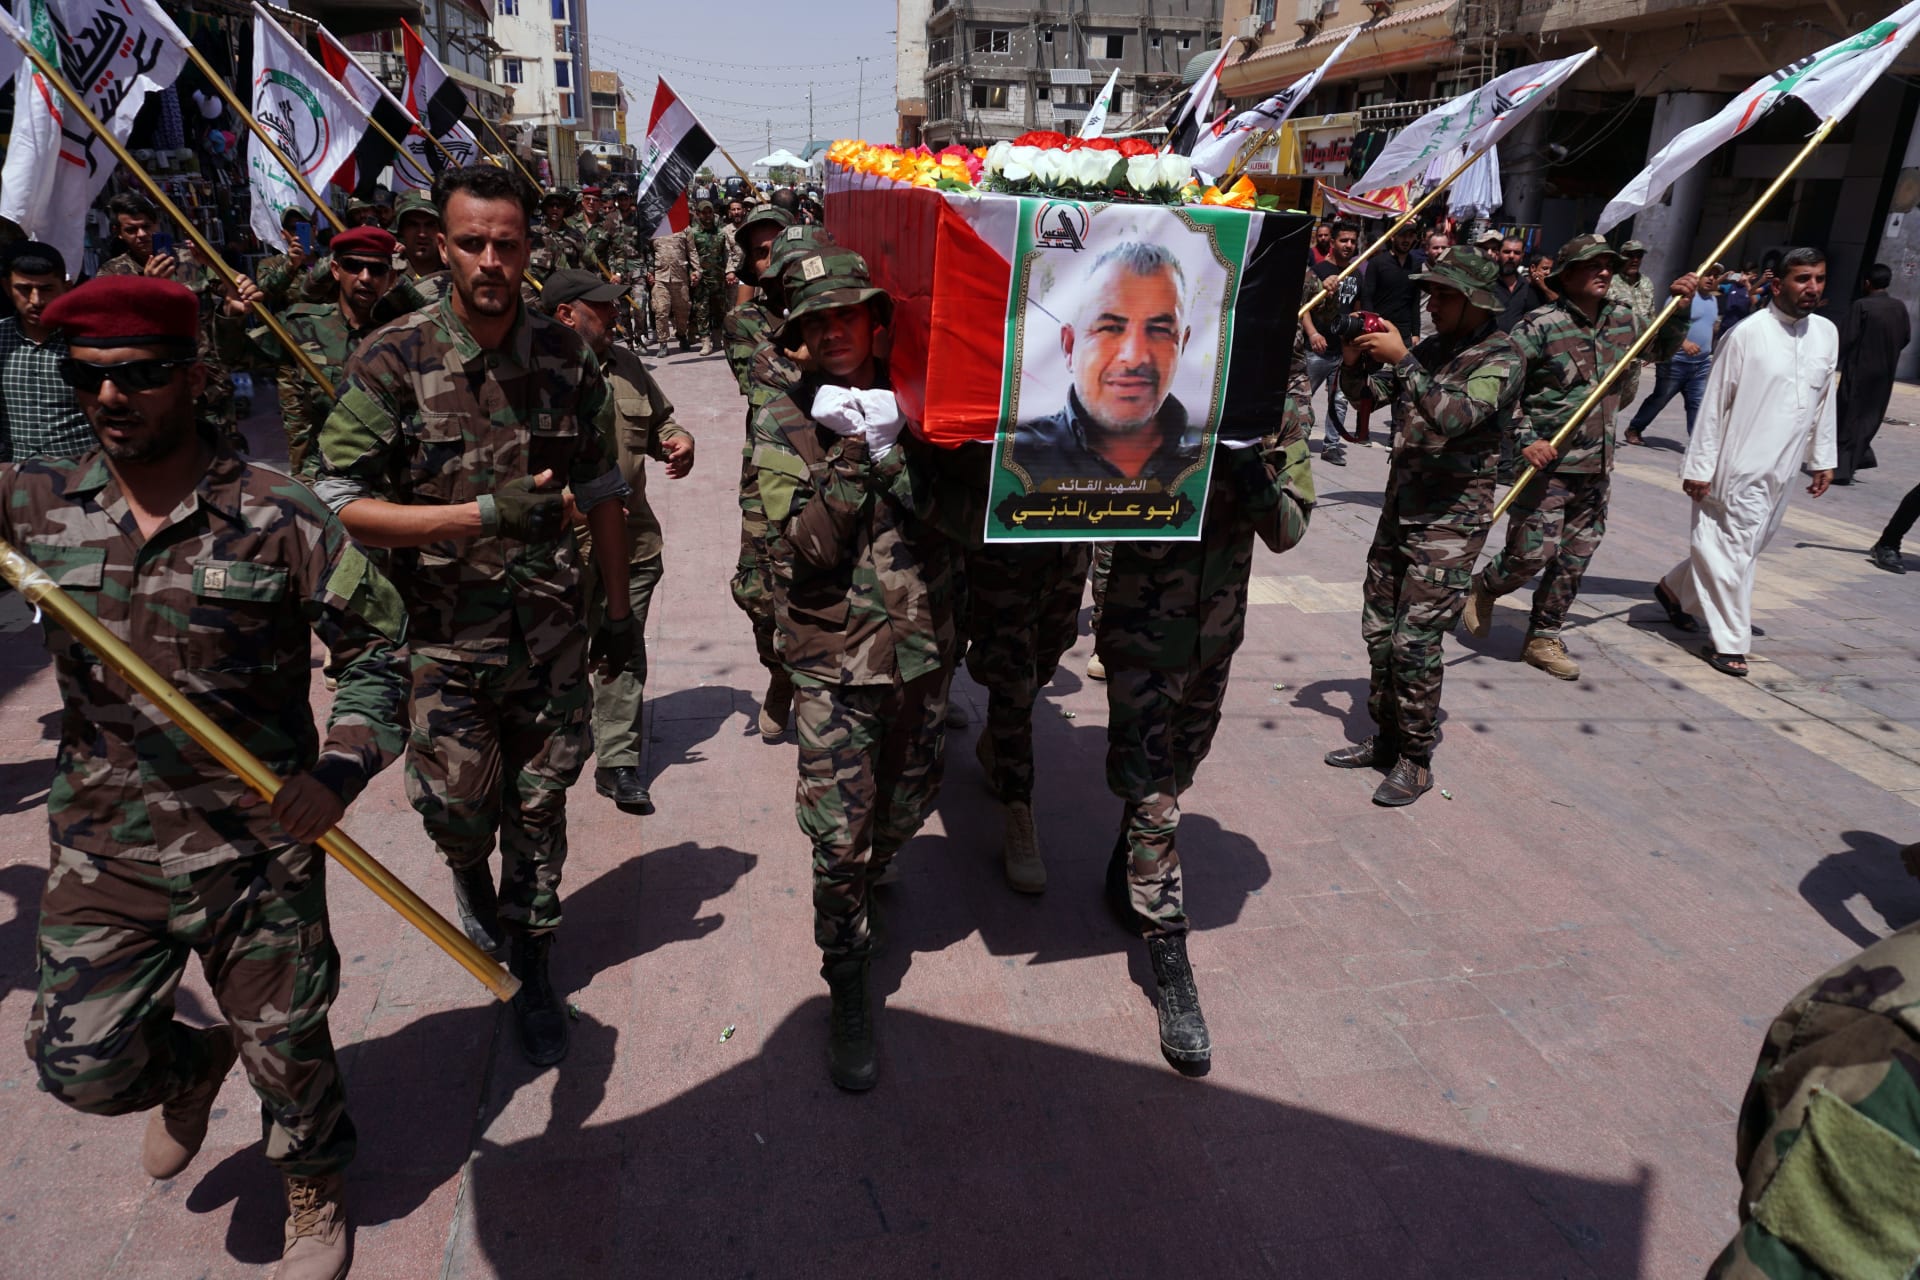 العراق يدين قصف مواقع "الحشد الشعبي".. و"البنتاغون" تنفي تورطها في "تقديم غطاء" لإسرائيل